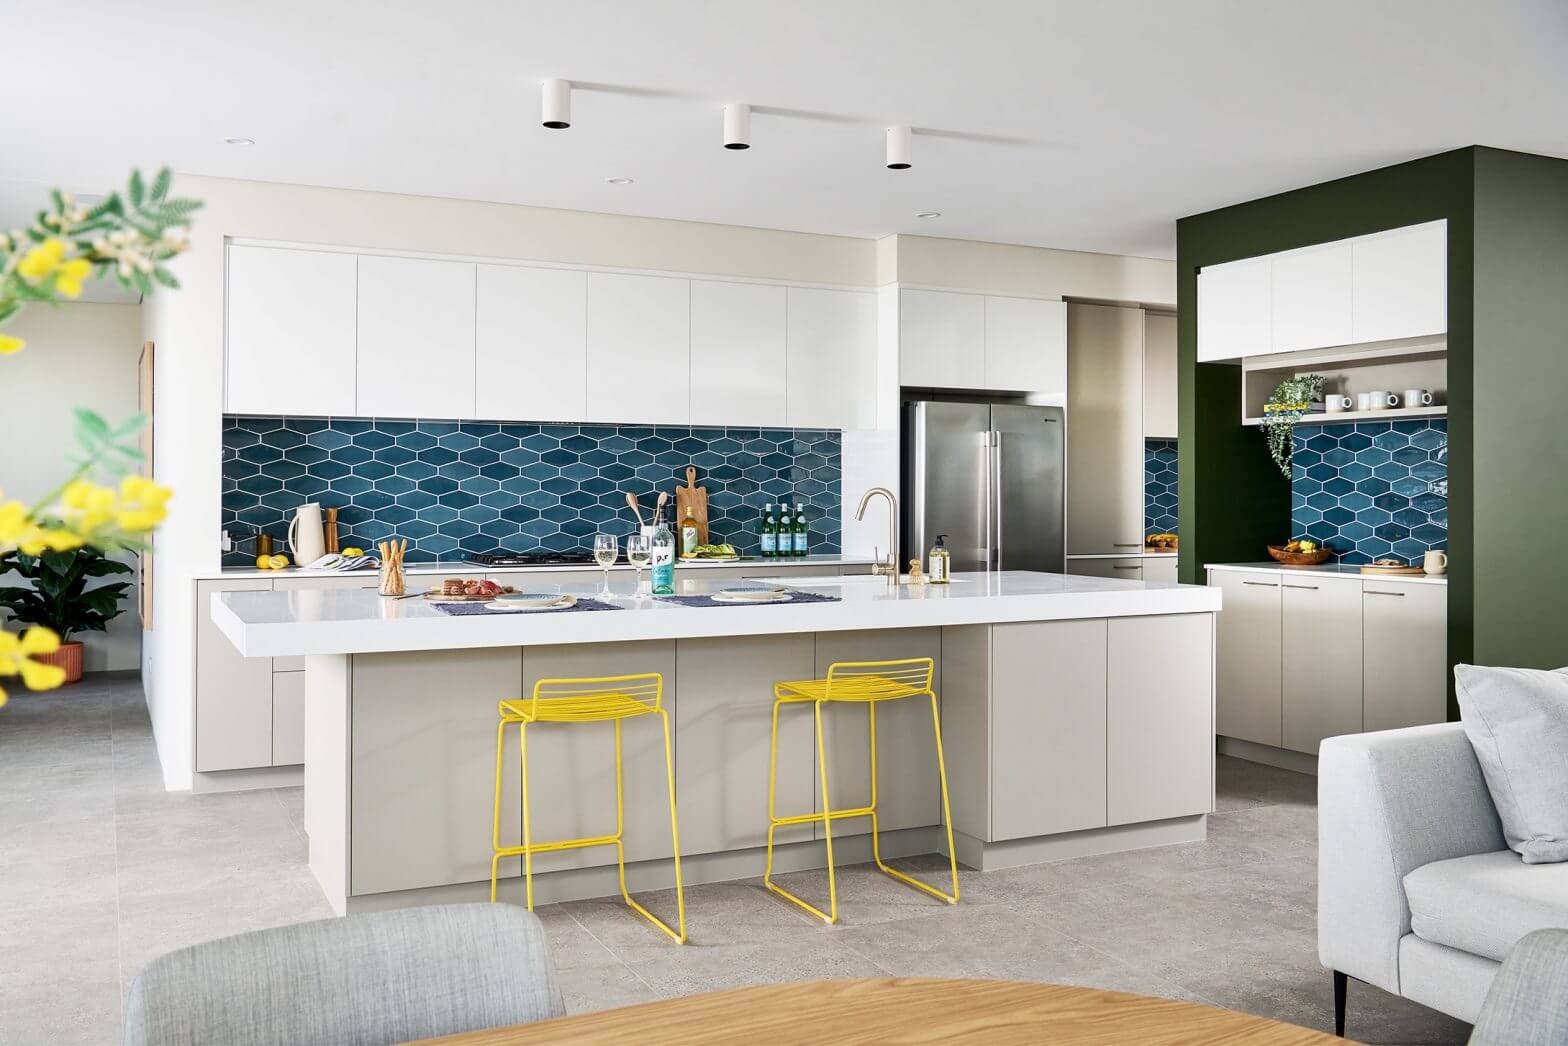 Interior Kitchen Design Ideas: Choosing Your Splashbacks